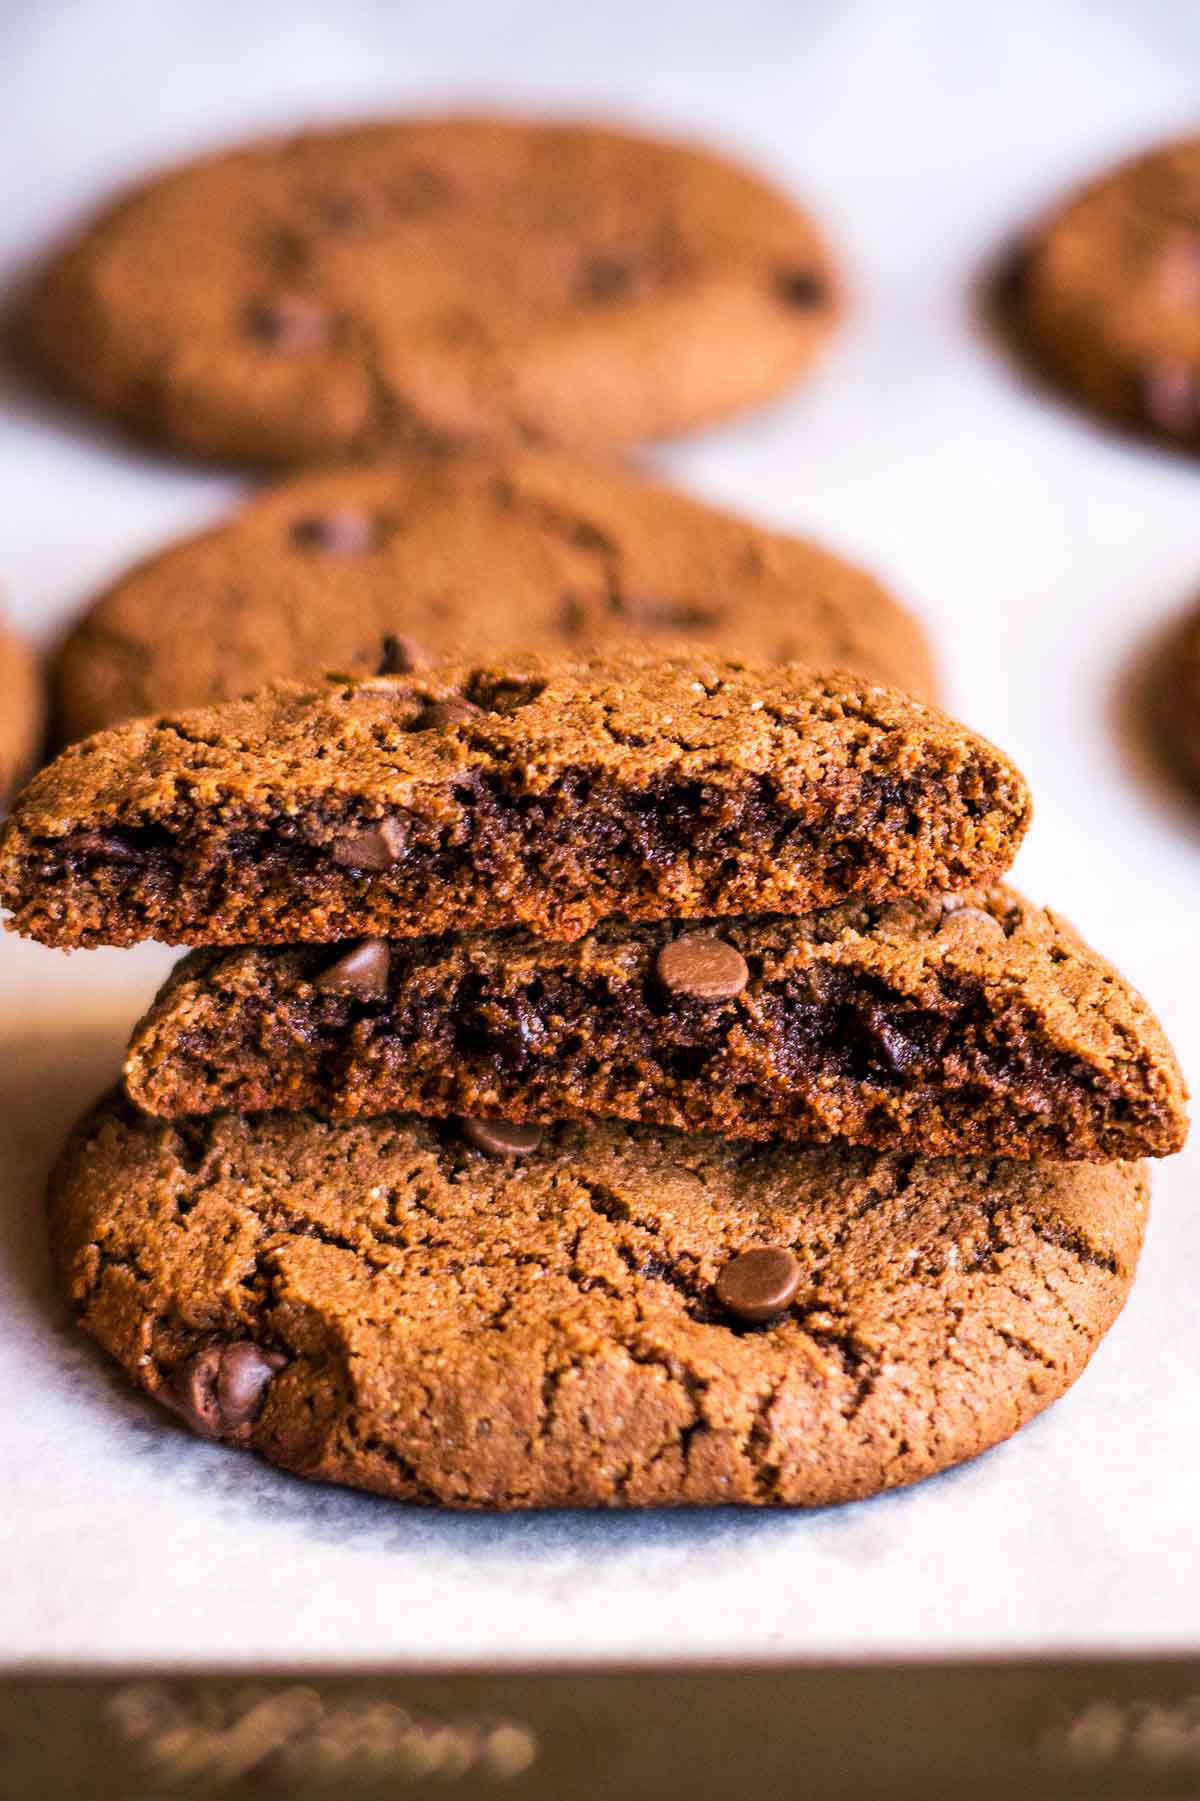 Double chocolate cookies broken in half to reveal texture inside